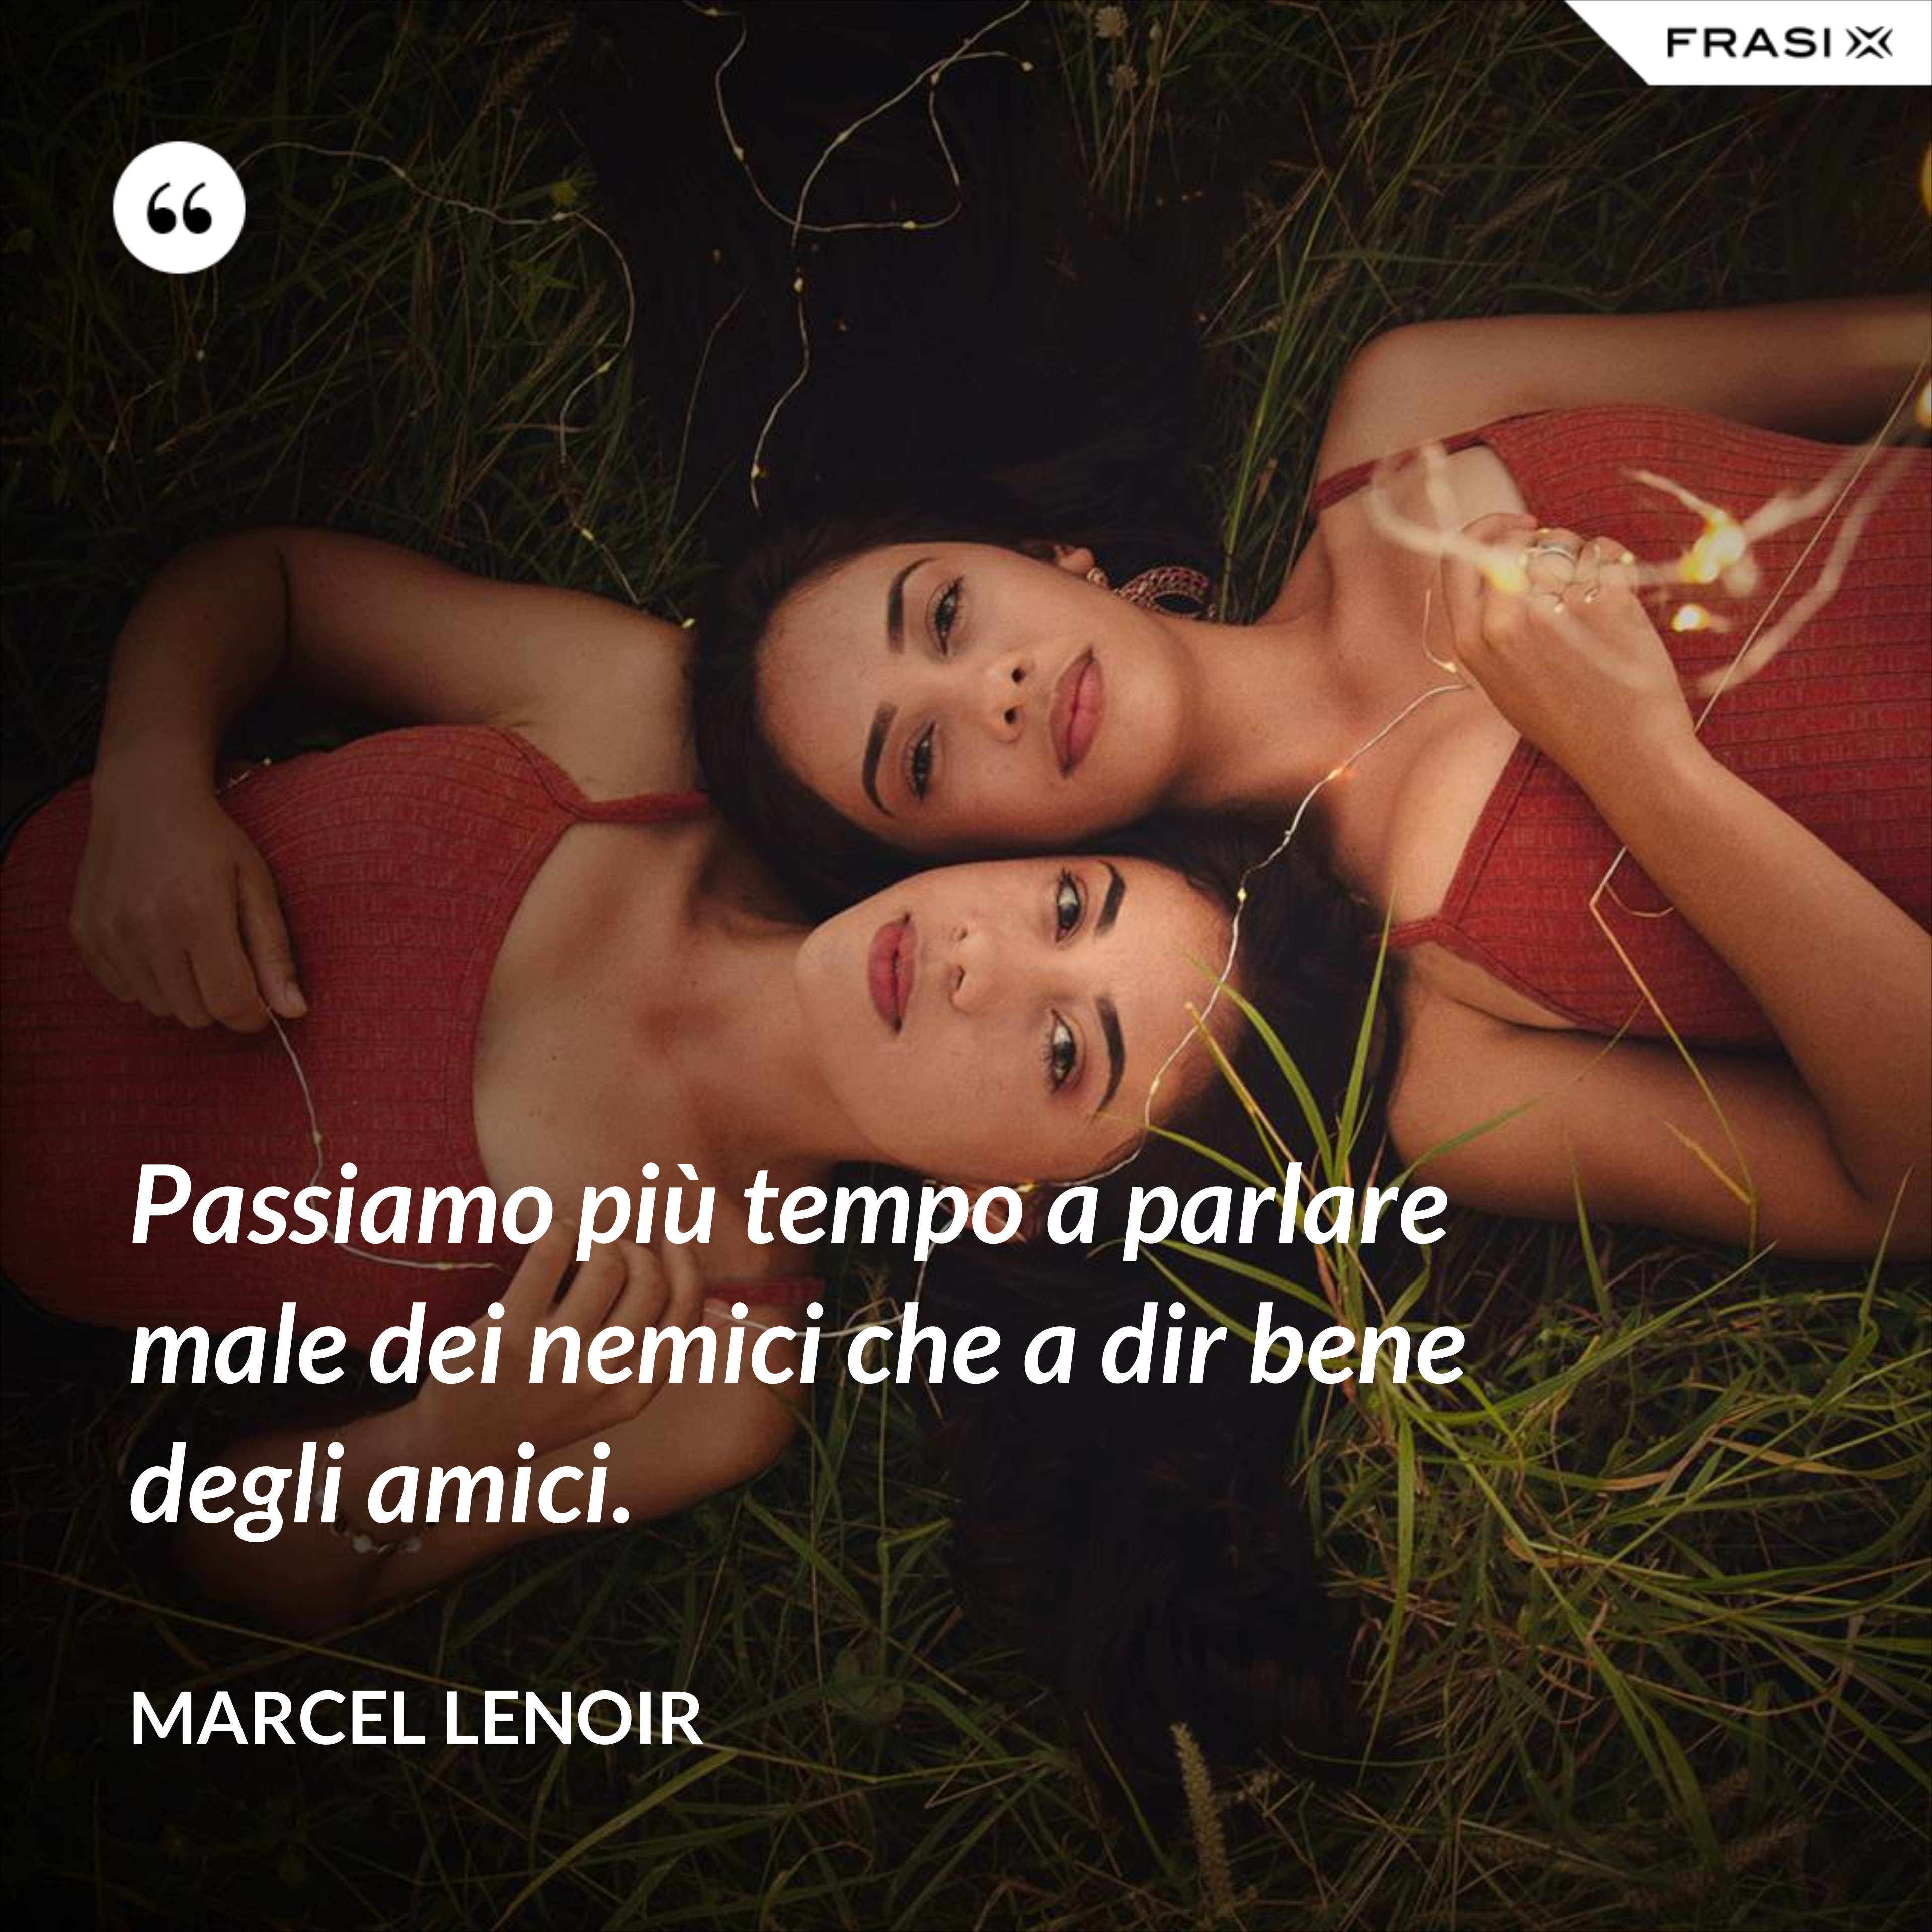 Passiamo più tempo a parlare male dei nemici che a dir bene degli amici. - Marcel Lenoir